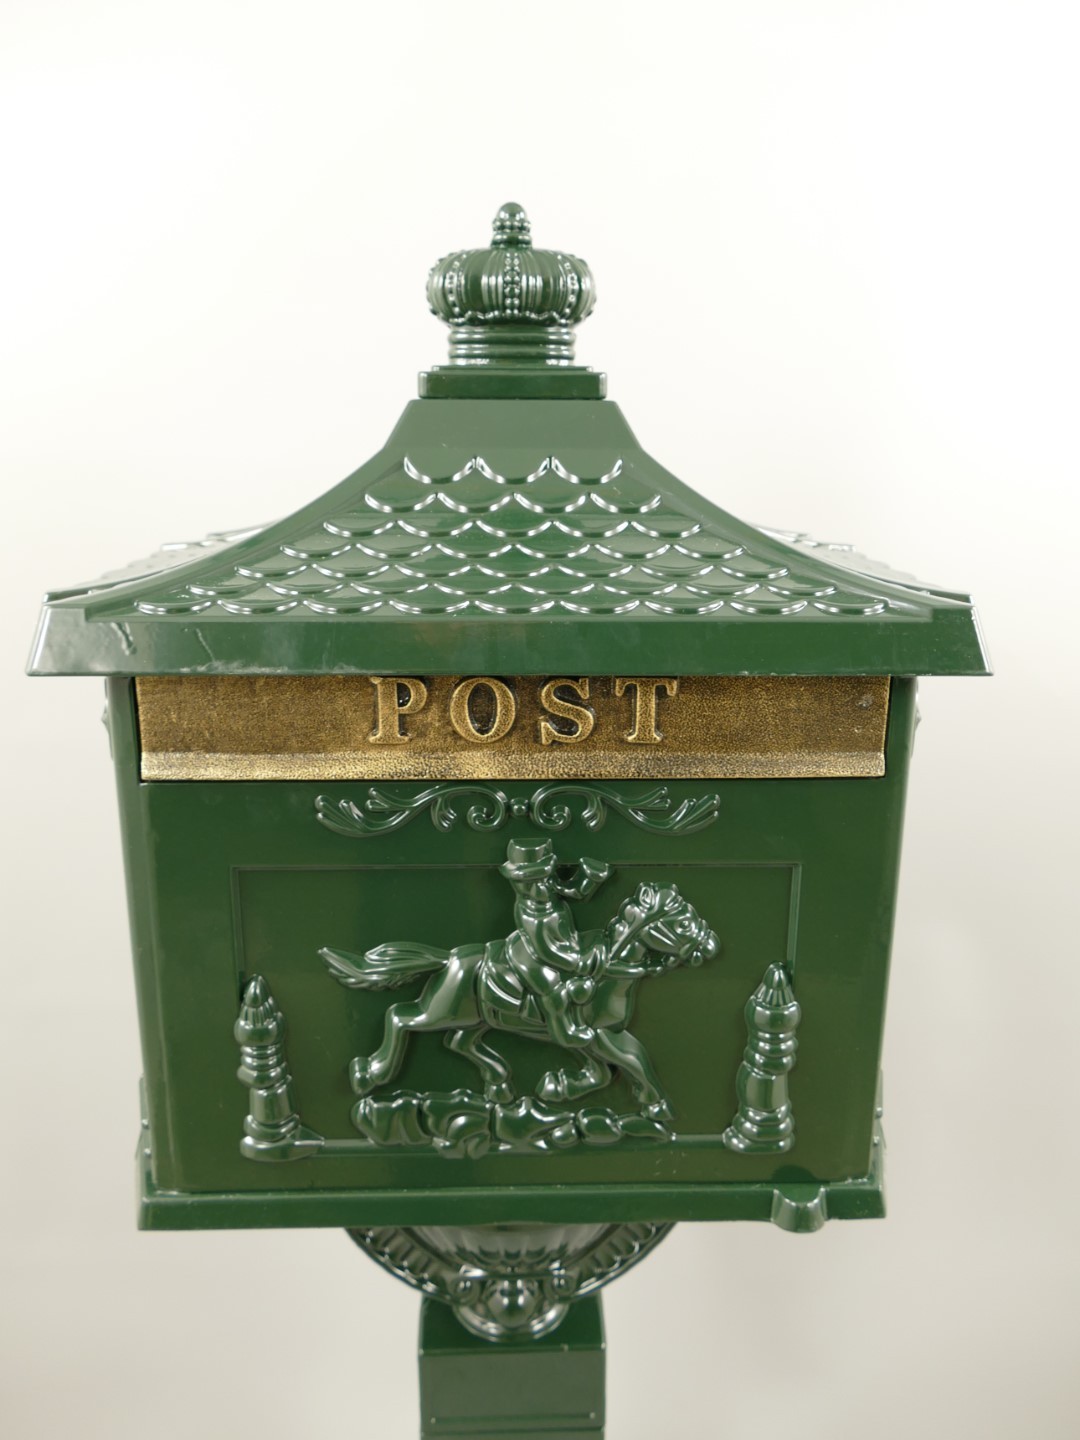 Englischer Briefkasten Standbriefkasten rustikal grün Antik Stil Aluguß H.117cm